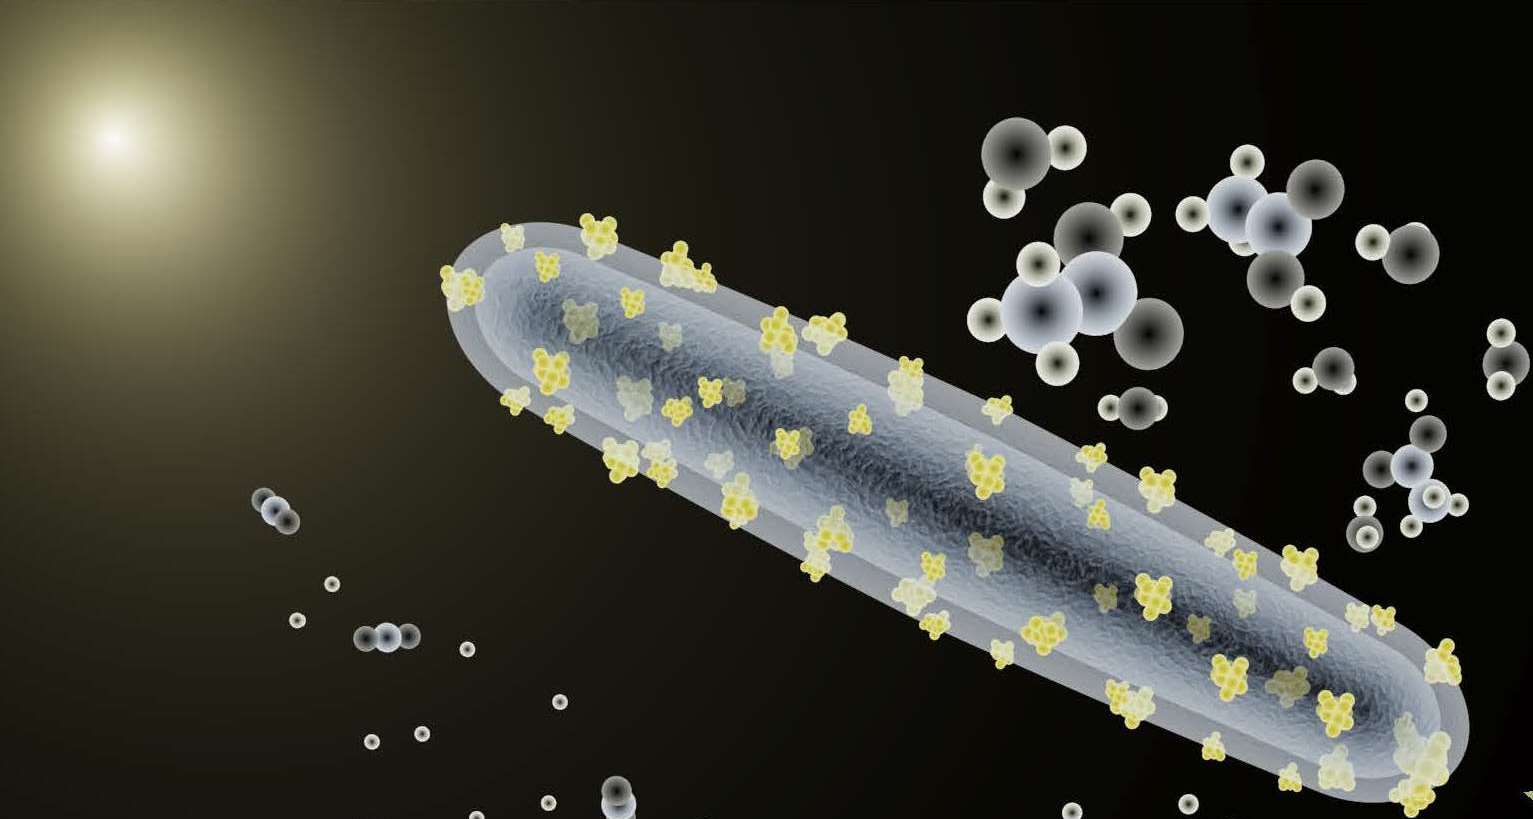 Güneş enerjisinden yakıt üretebilen bakteri geliştirildi